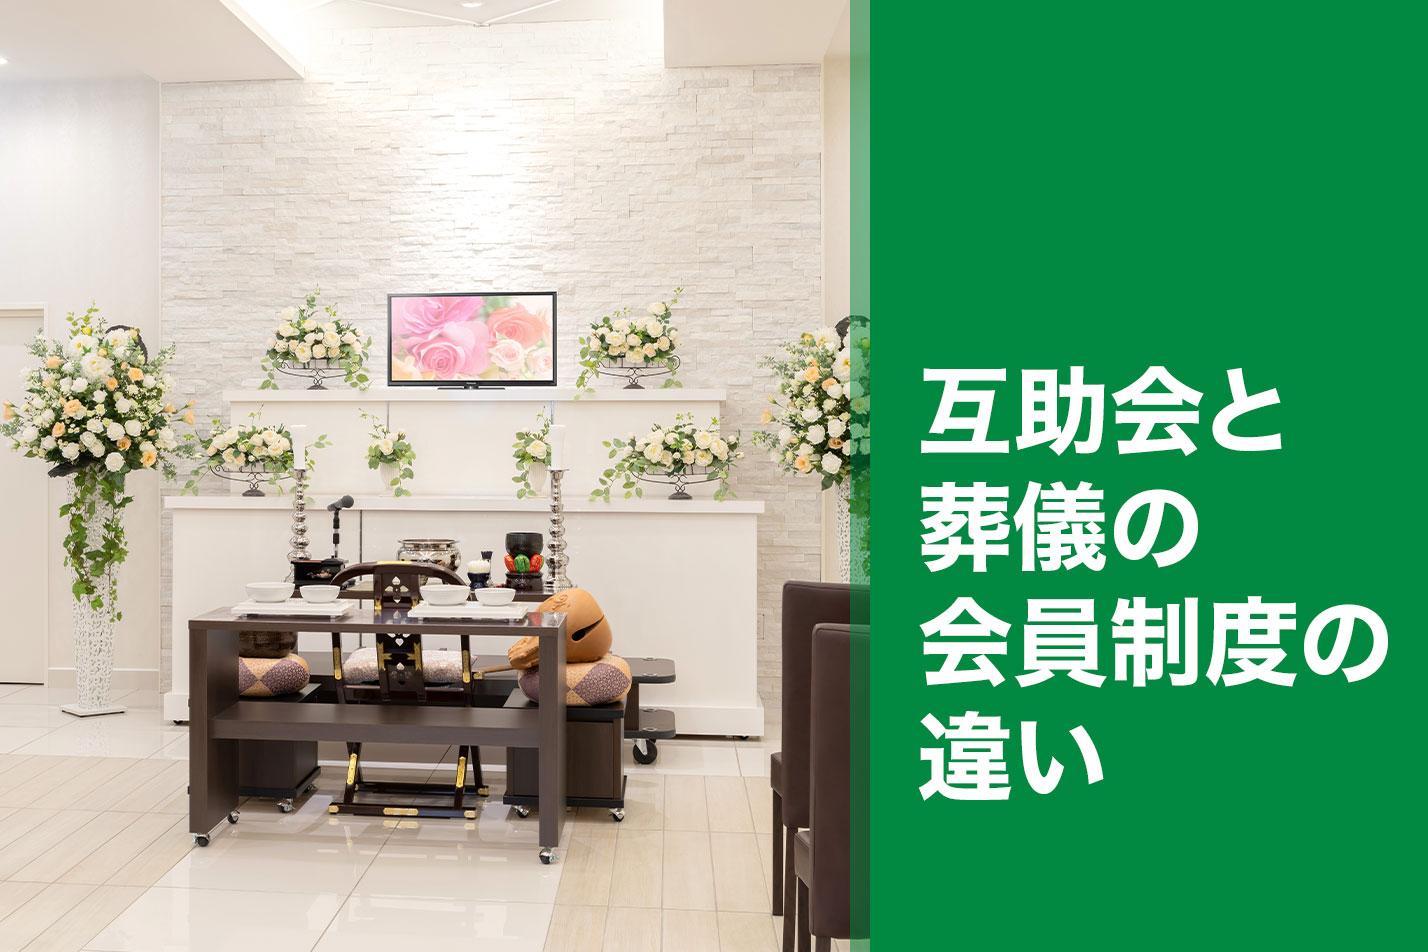 【豊橋市】互助会と葬儀の会員制度の違いのイメージ画像